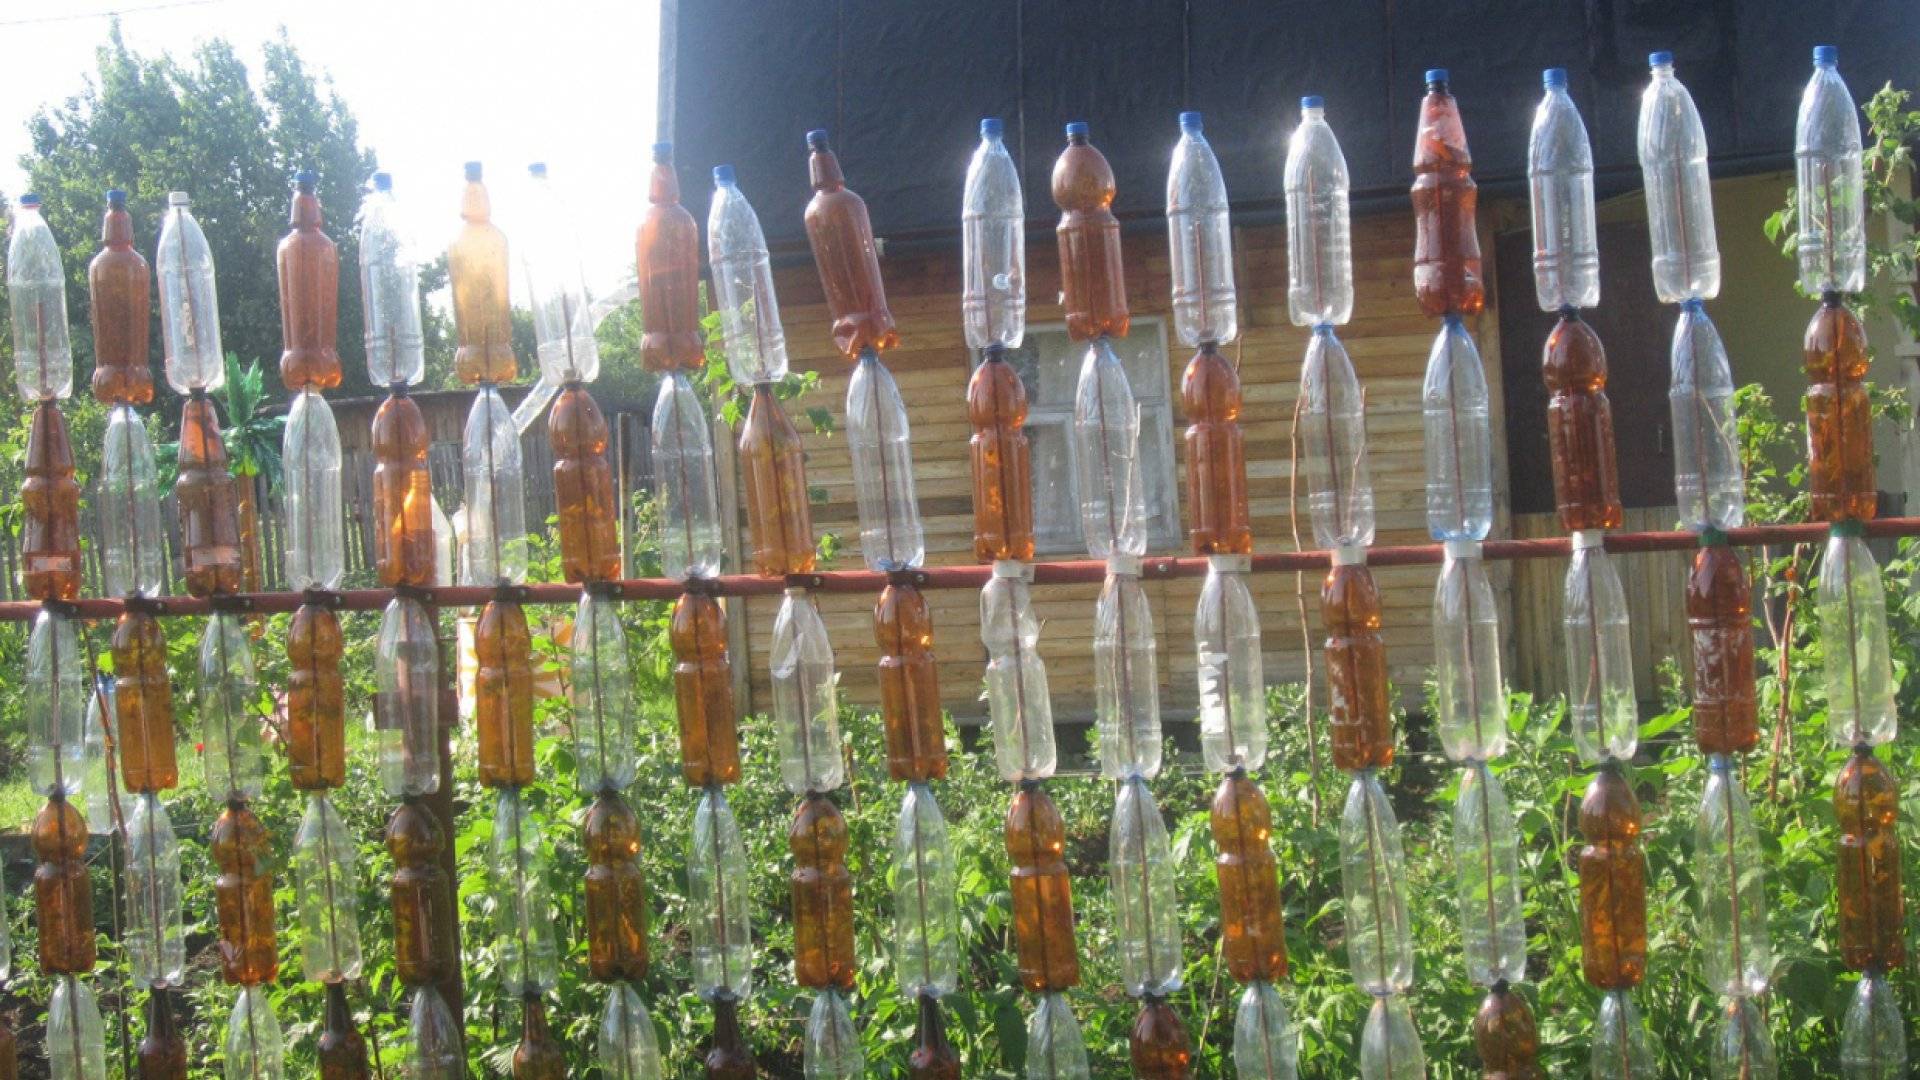 А вы знаете, как сделать забор из пластиковых бутылок или крышек?